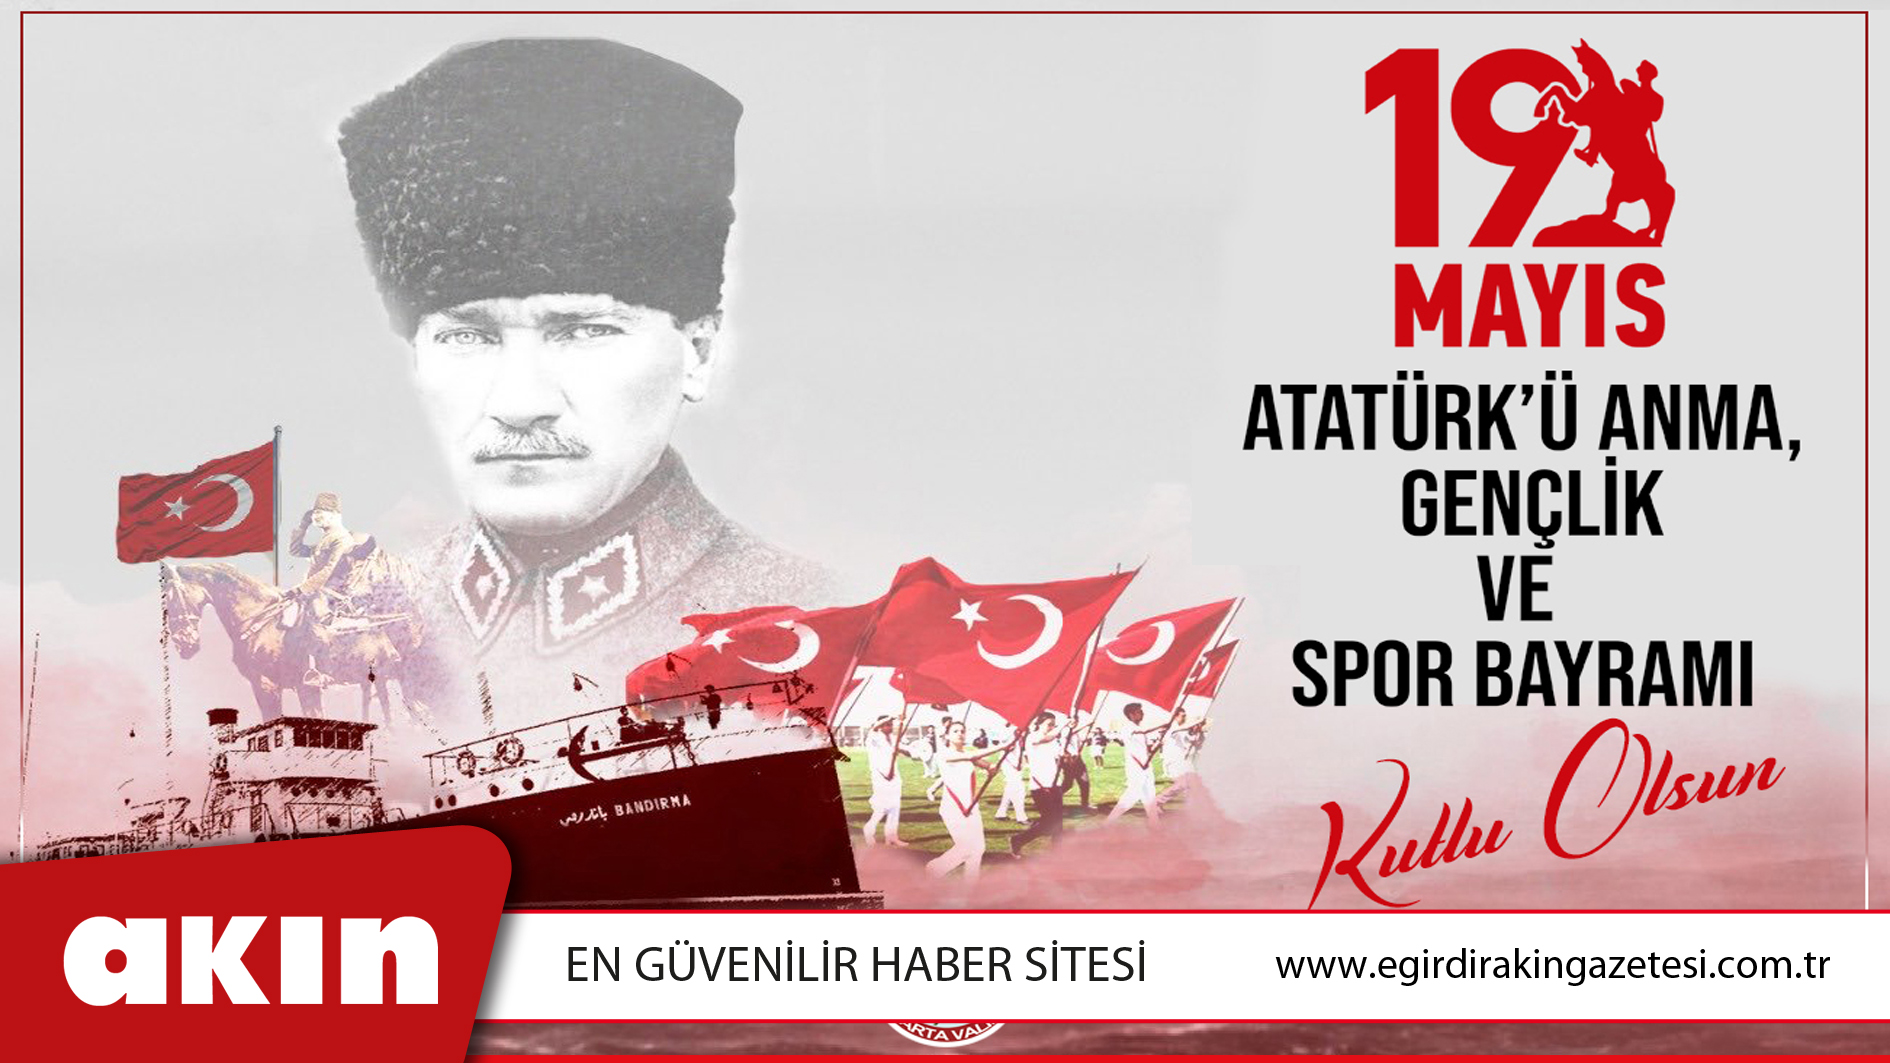 Isparta Vali Vekili Hamdullah Suphi Özgödek’in 19 Mayıs Atatürk’ü Anma, Gençlik ve Spor Bayramı Mesajı